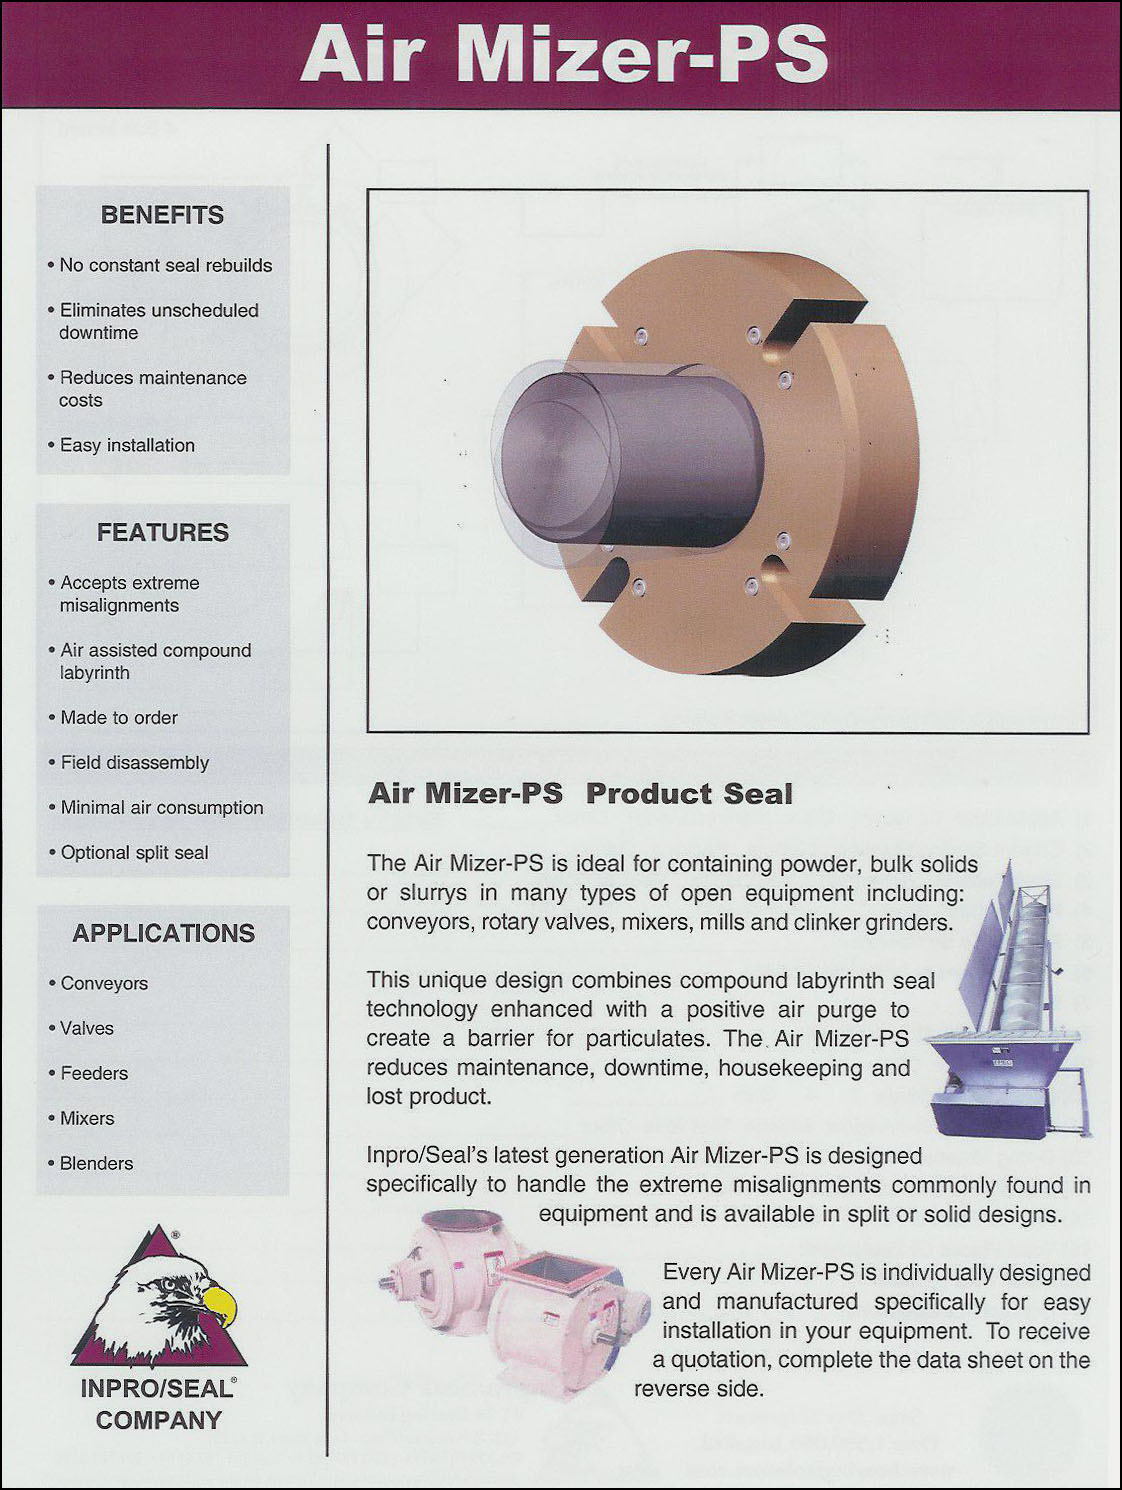 inpro bearing isolator catalog